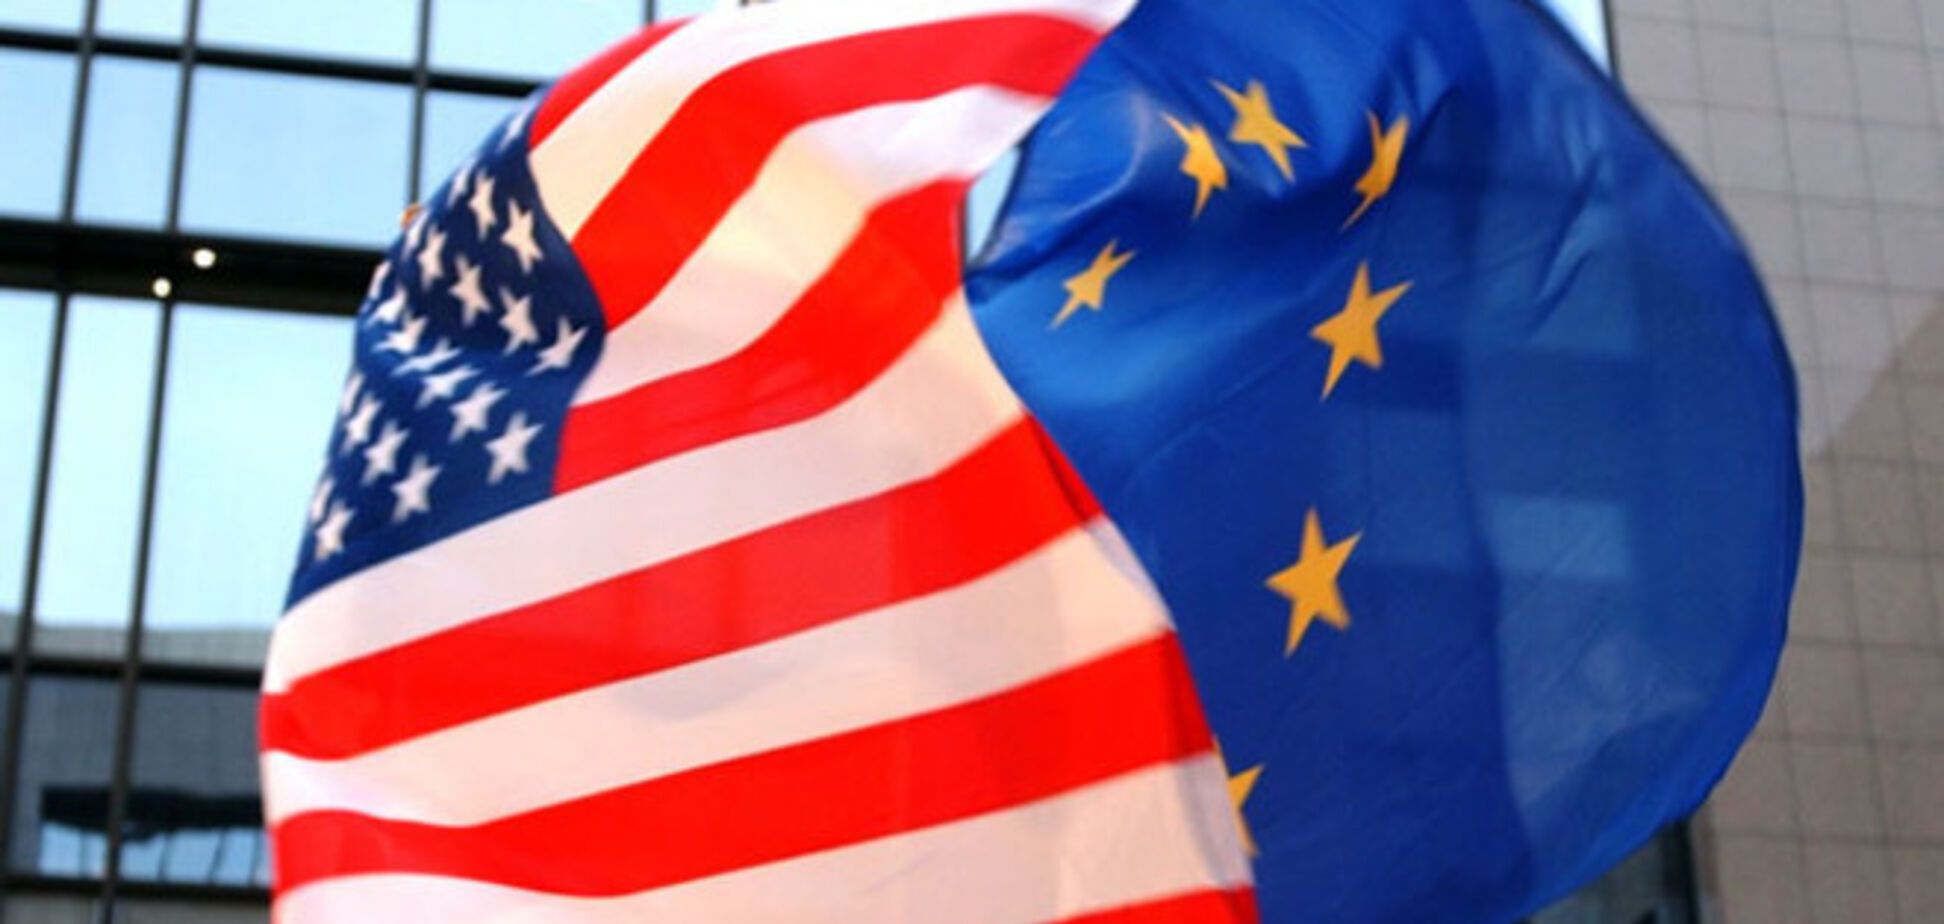 ЕС и США готовы ввести третий этап санкций против России